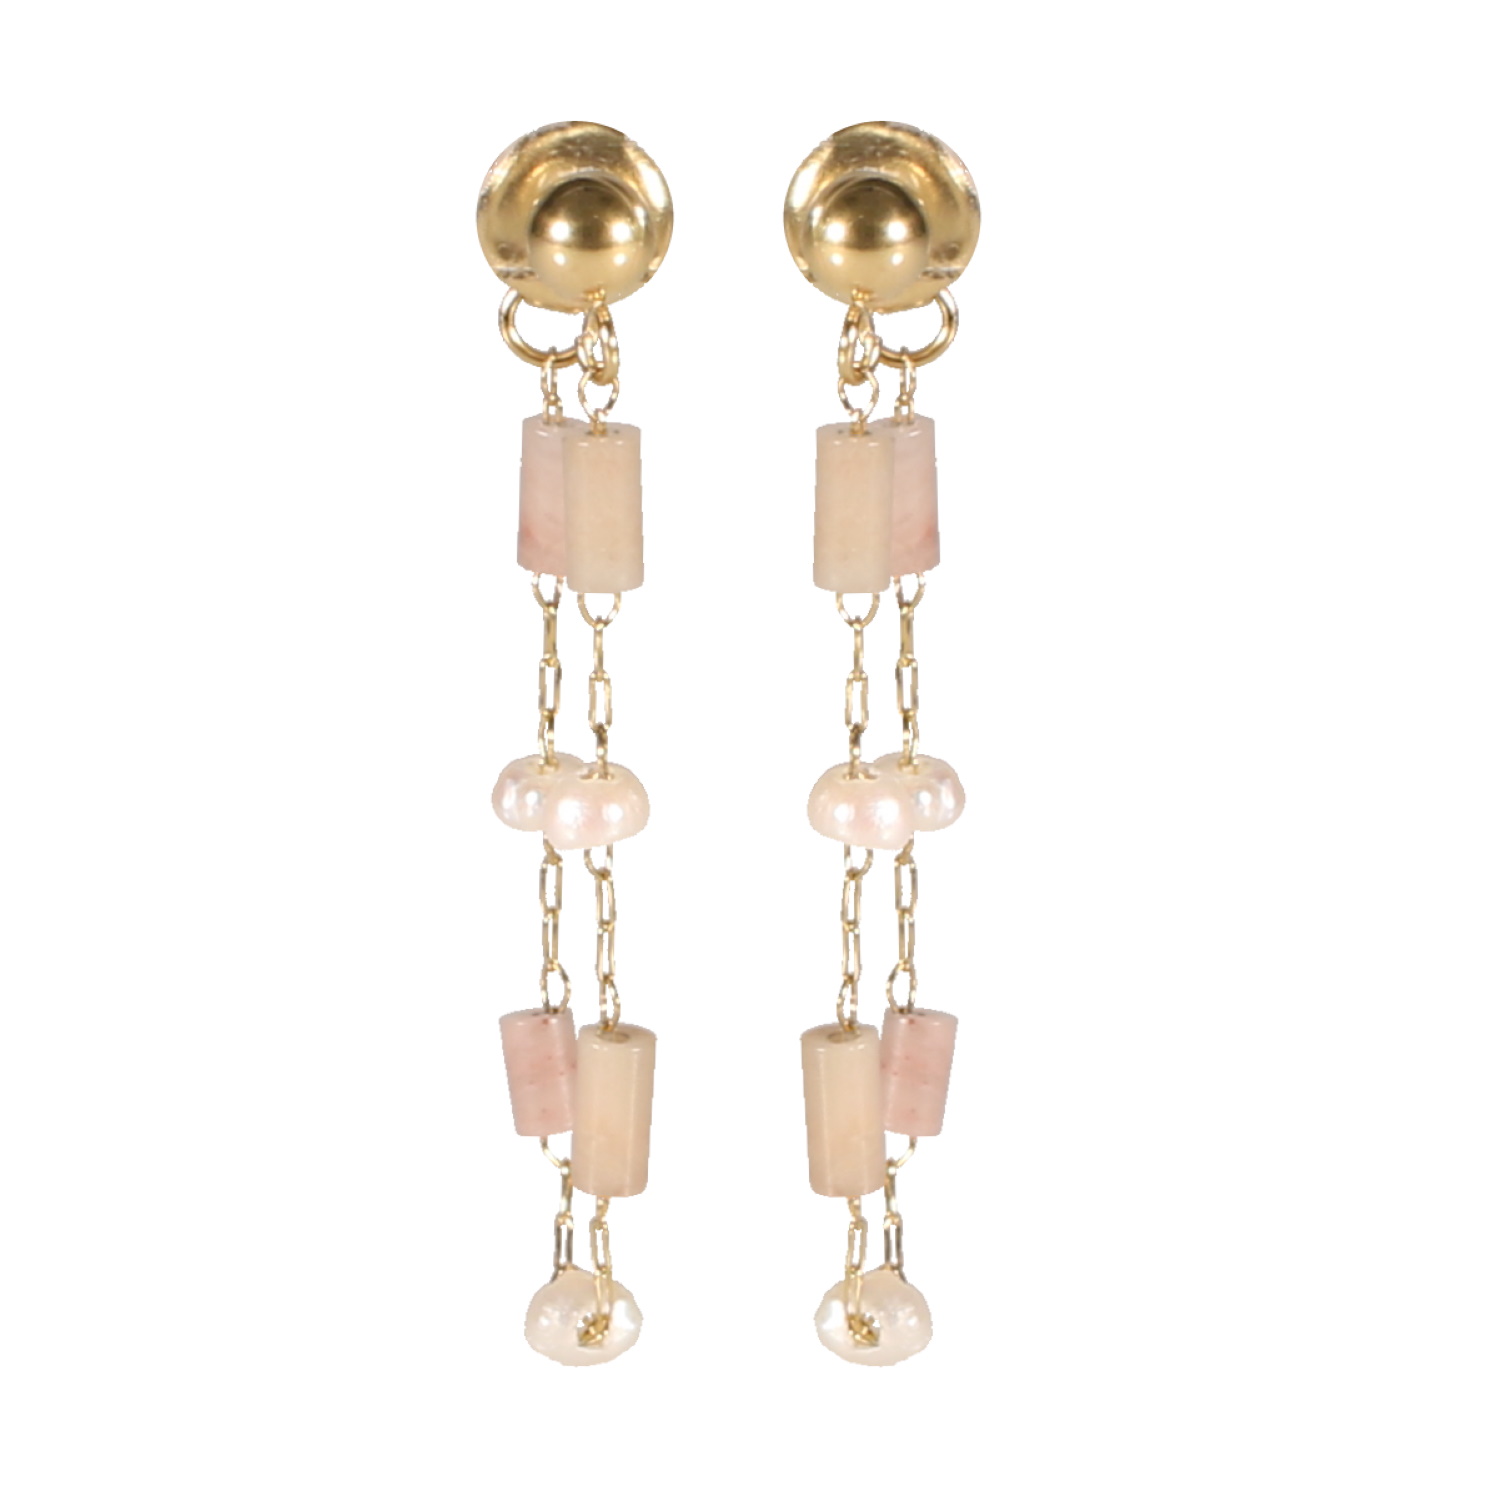 Boucles d'oreilles pendantes composées d'une puce boule et d'une chaîne en acier doré, des perles de nacre et des perles tubes de couleur rose. Pendantes Perle  Adolescent Adulte Femme Fille Indémodable 